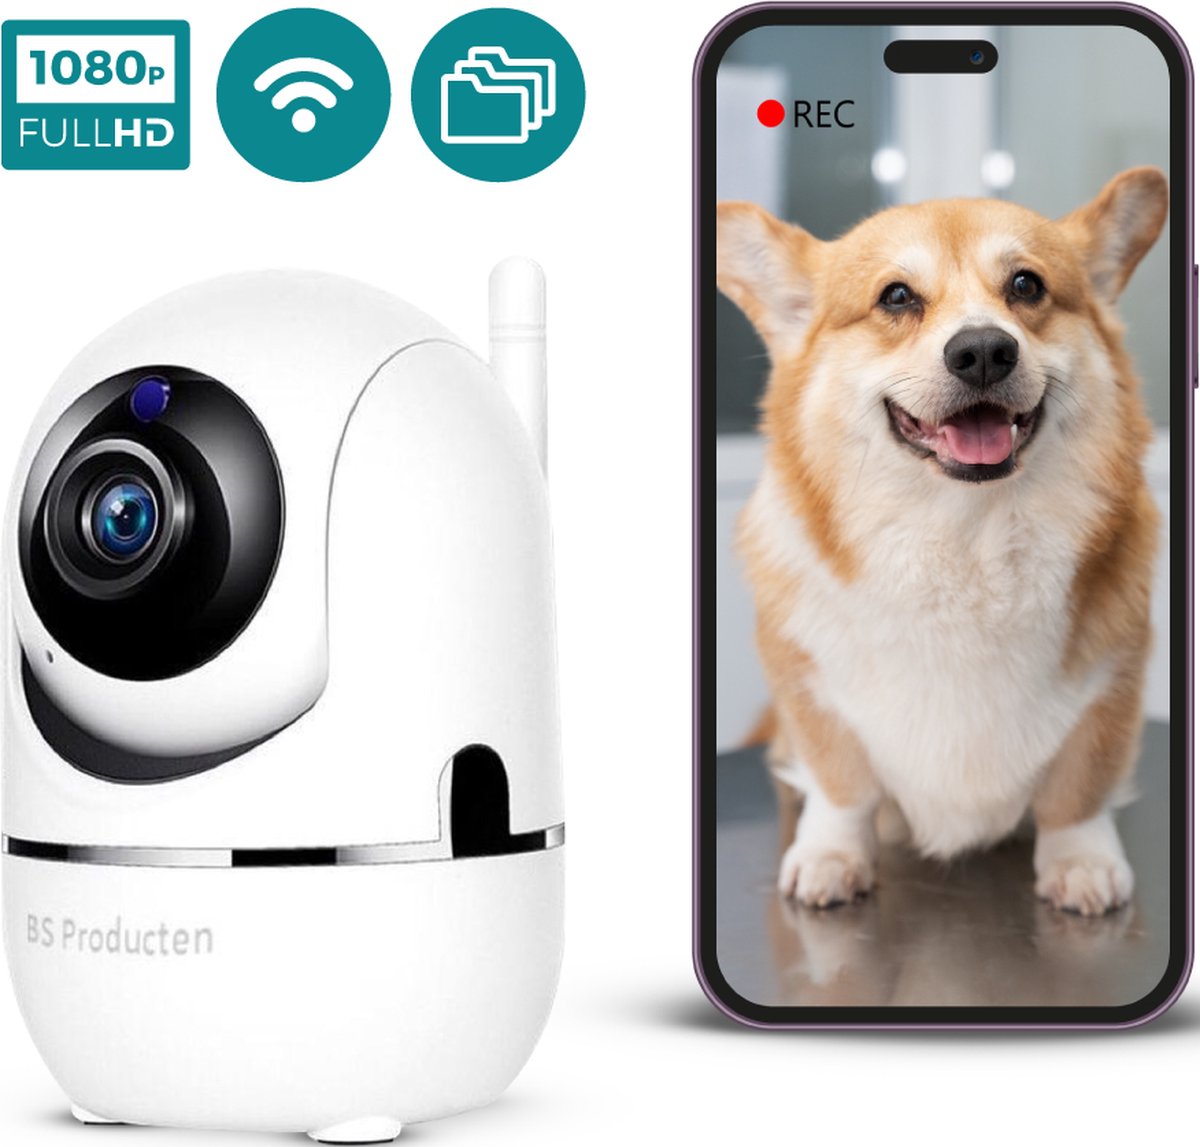 Beveiligingscamera - Huisdiercamera - WiFi - Full HD - Beweeg en geluidsdetectie - Werkt met app - Hondencamera Binnen - Indoor - Wit